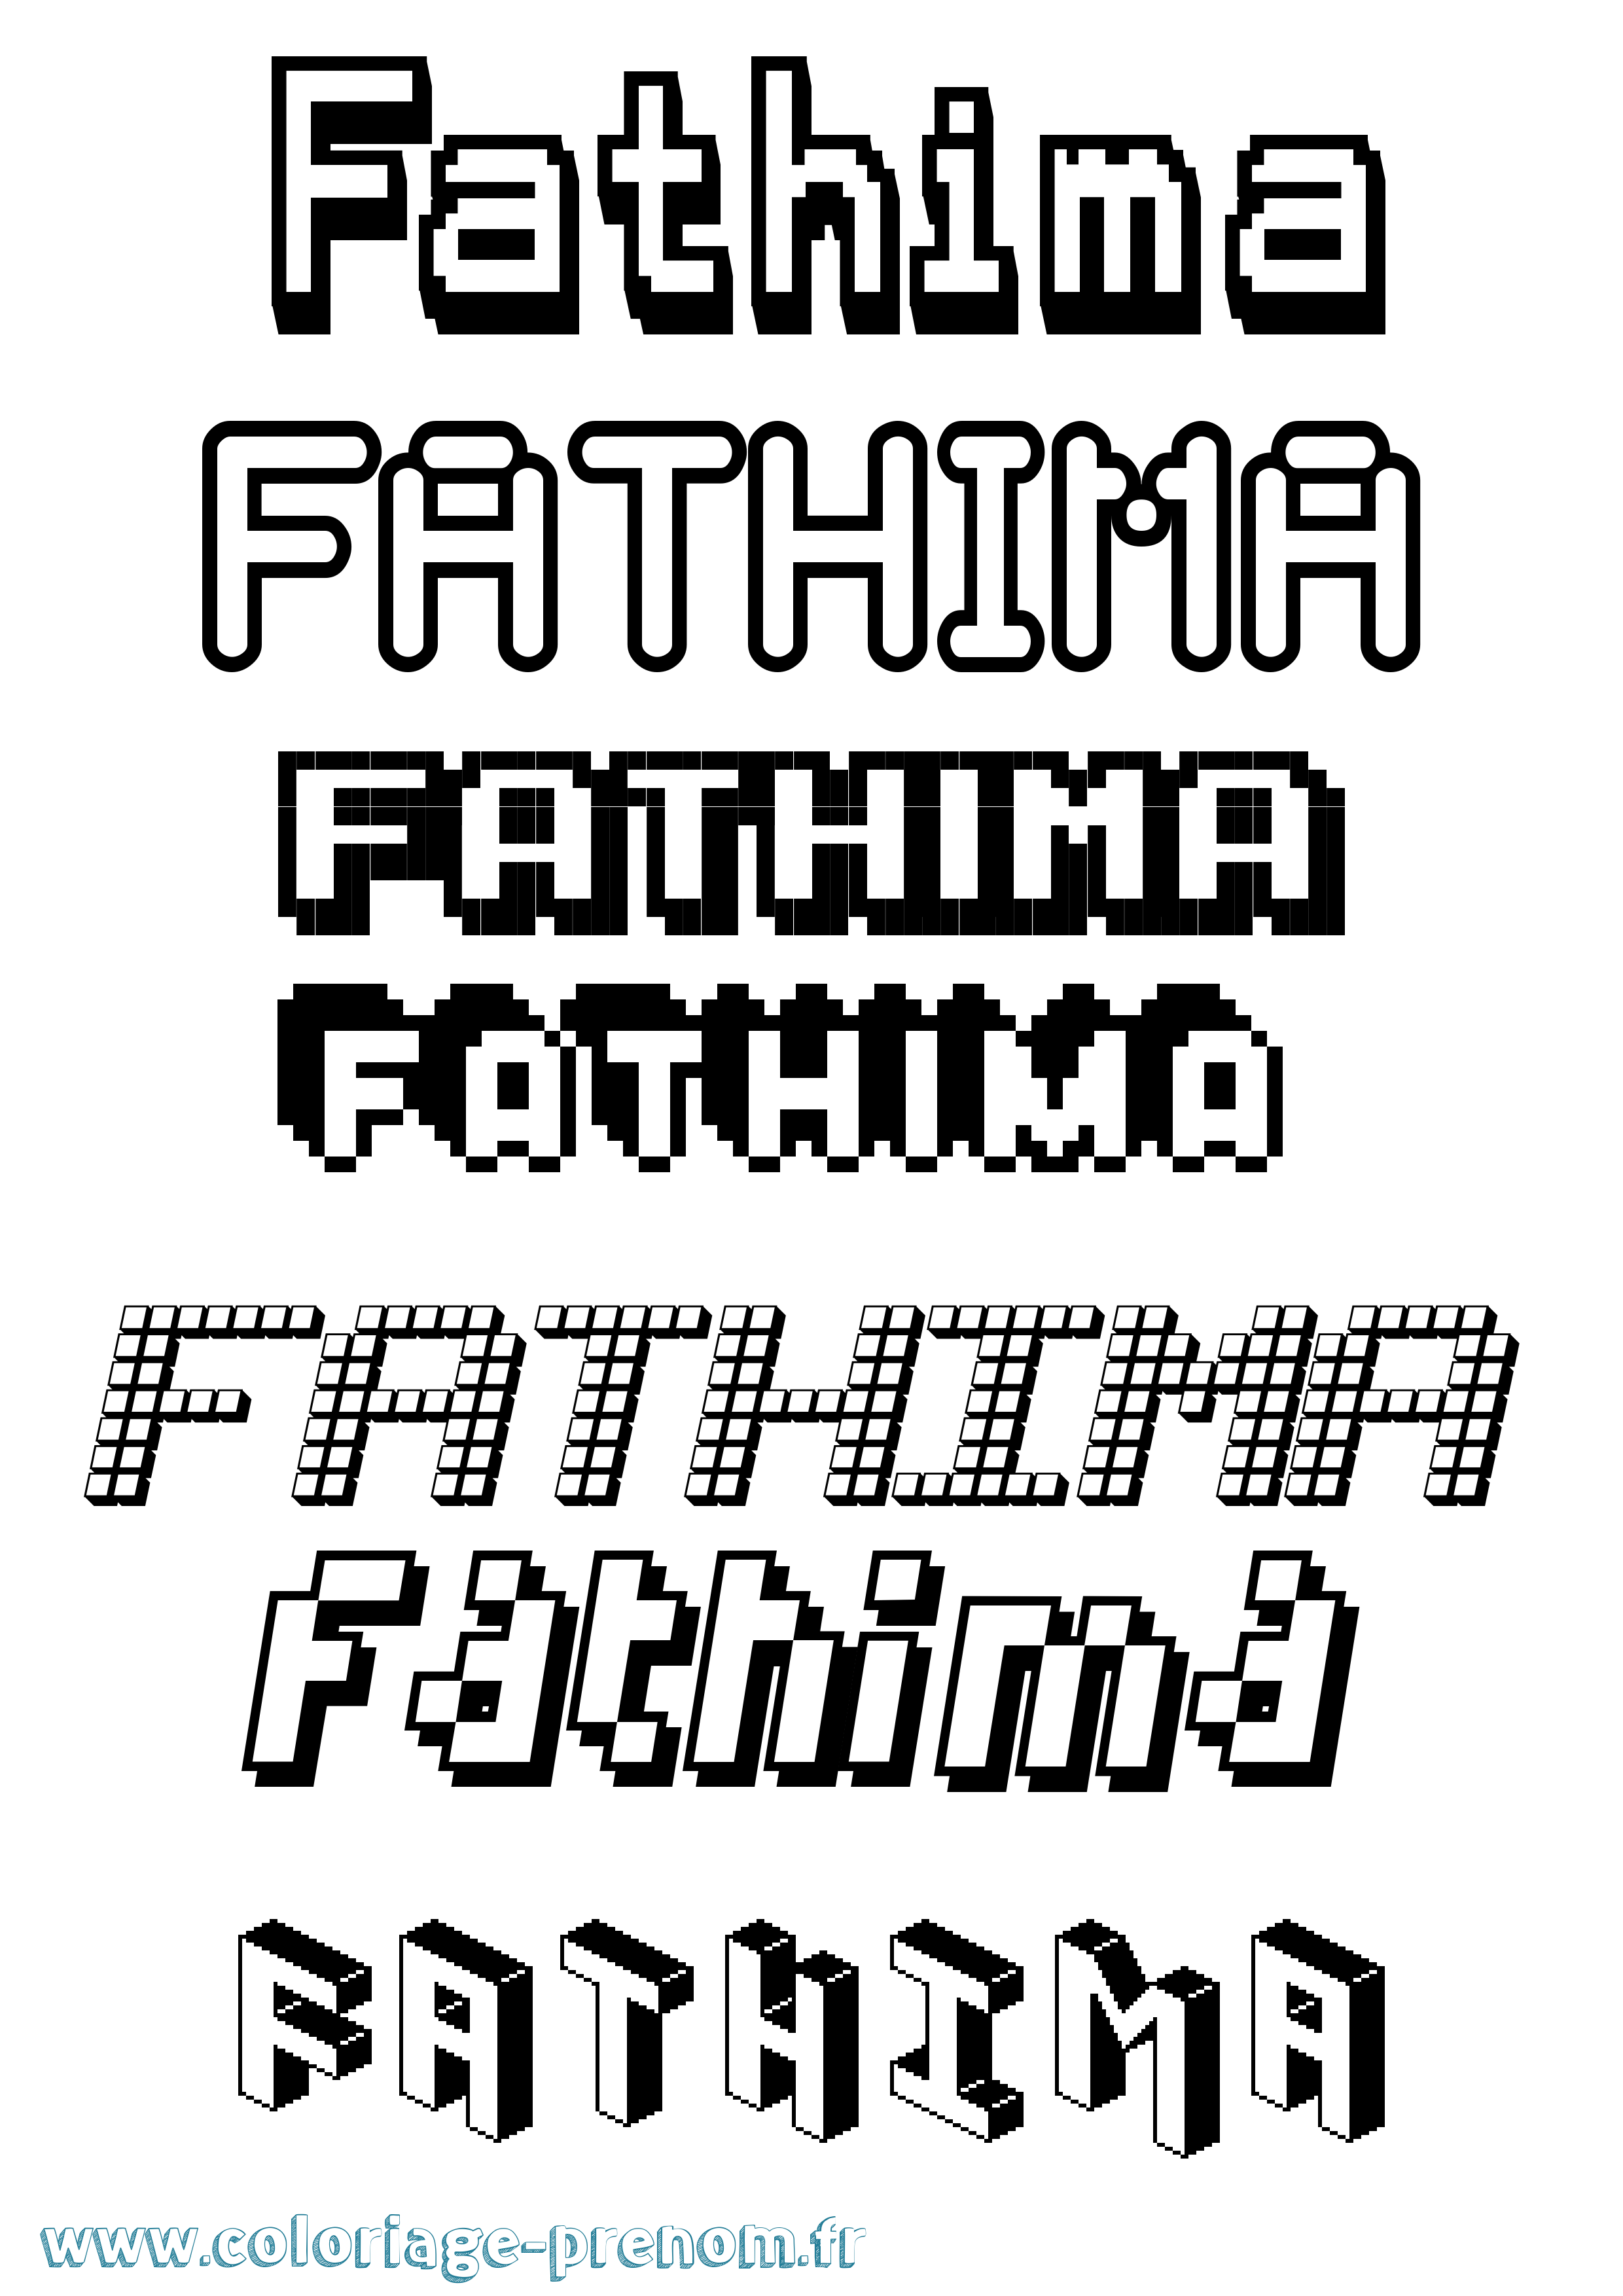 Coloriage prénom Fathima Pixel